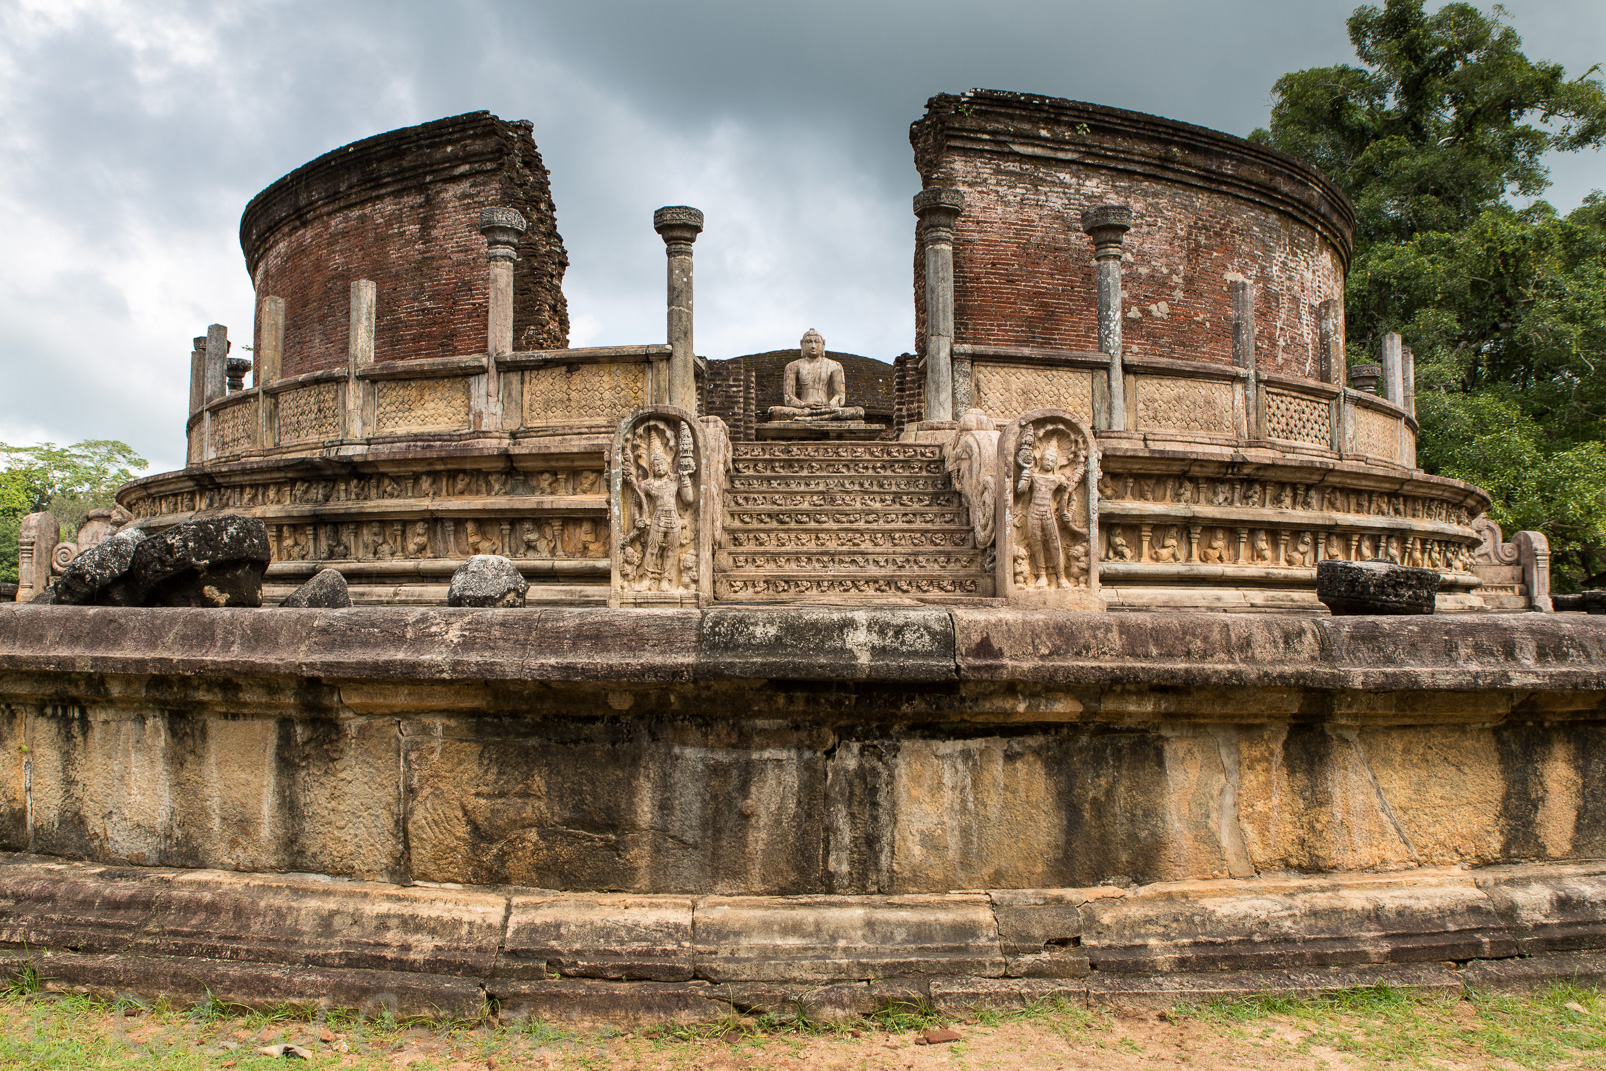 Vatadage, bel exemple d'architecture d'une chambre reliquaire circulaire. 4 entrées mênent au Dagoba central ornées chacune d'un Bouddha.